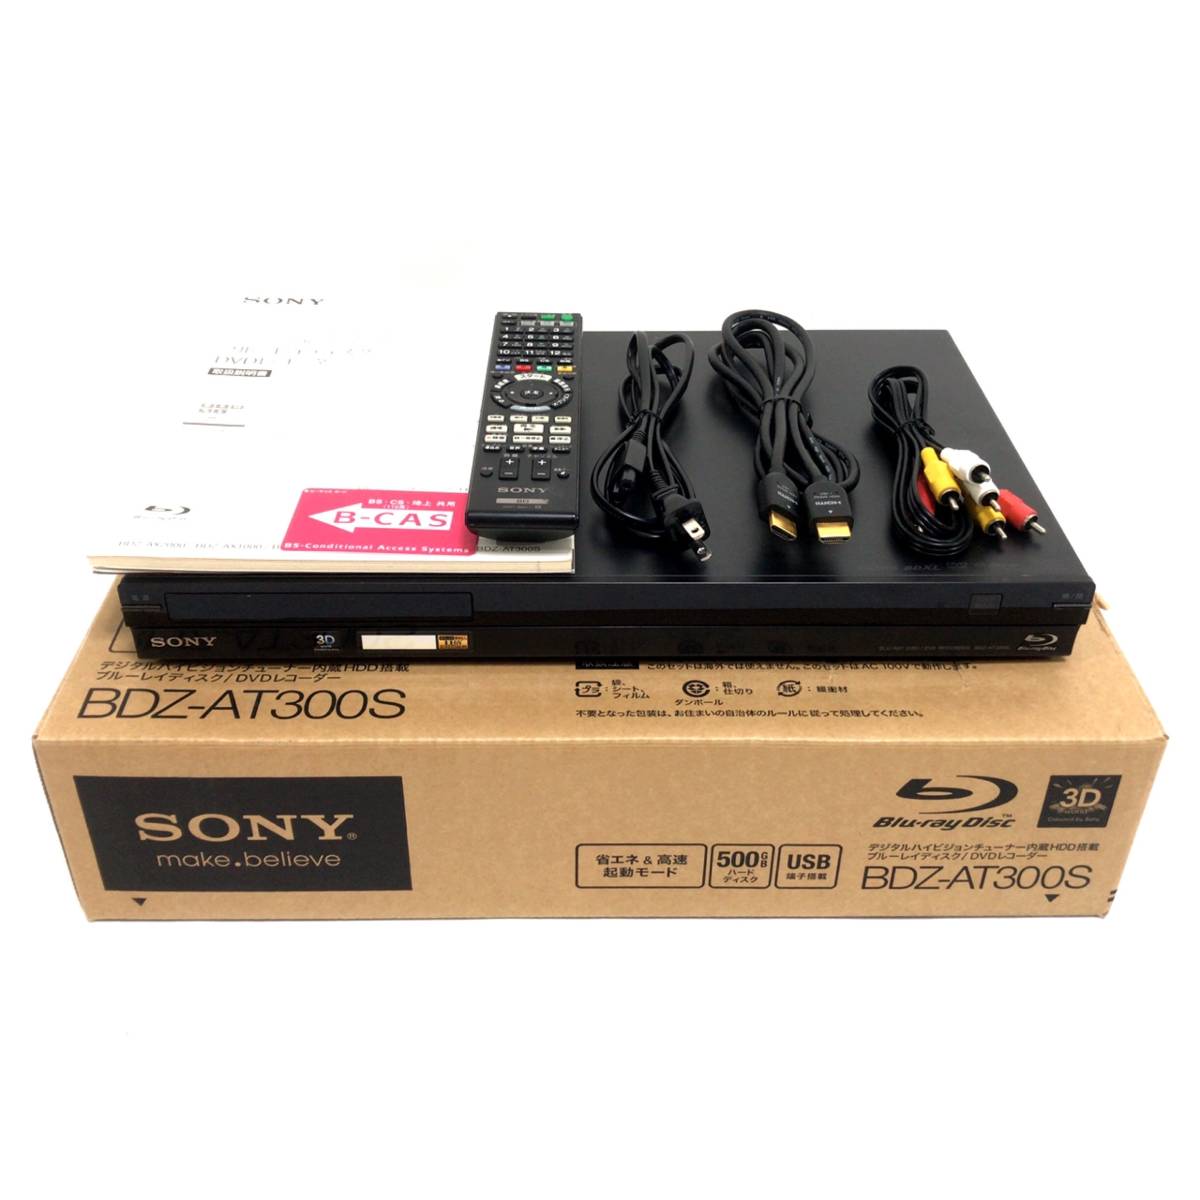 元箱付き SONY 500GB 1チューナー ブルーレイレコーダー BDZ-AT300S